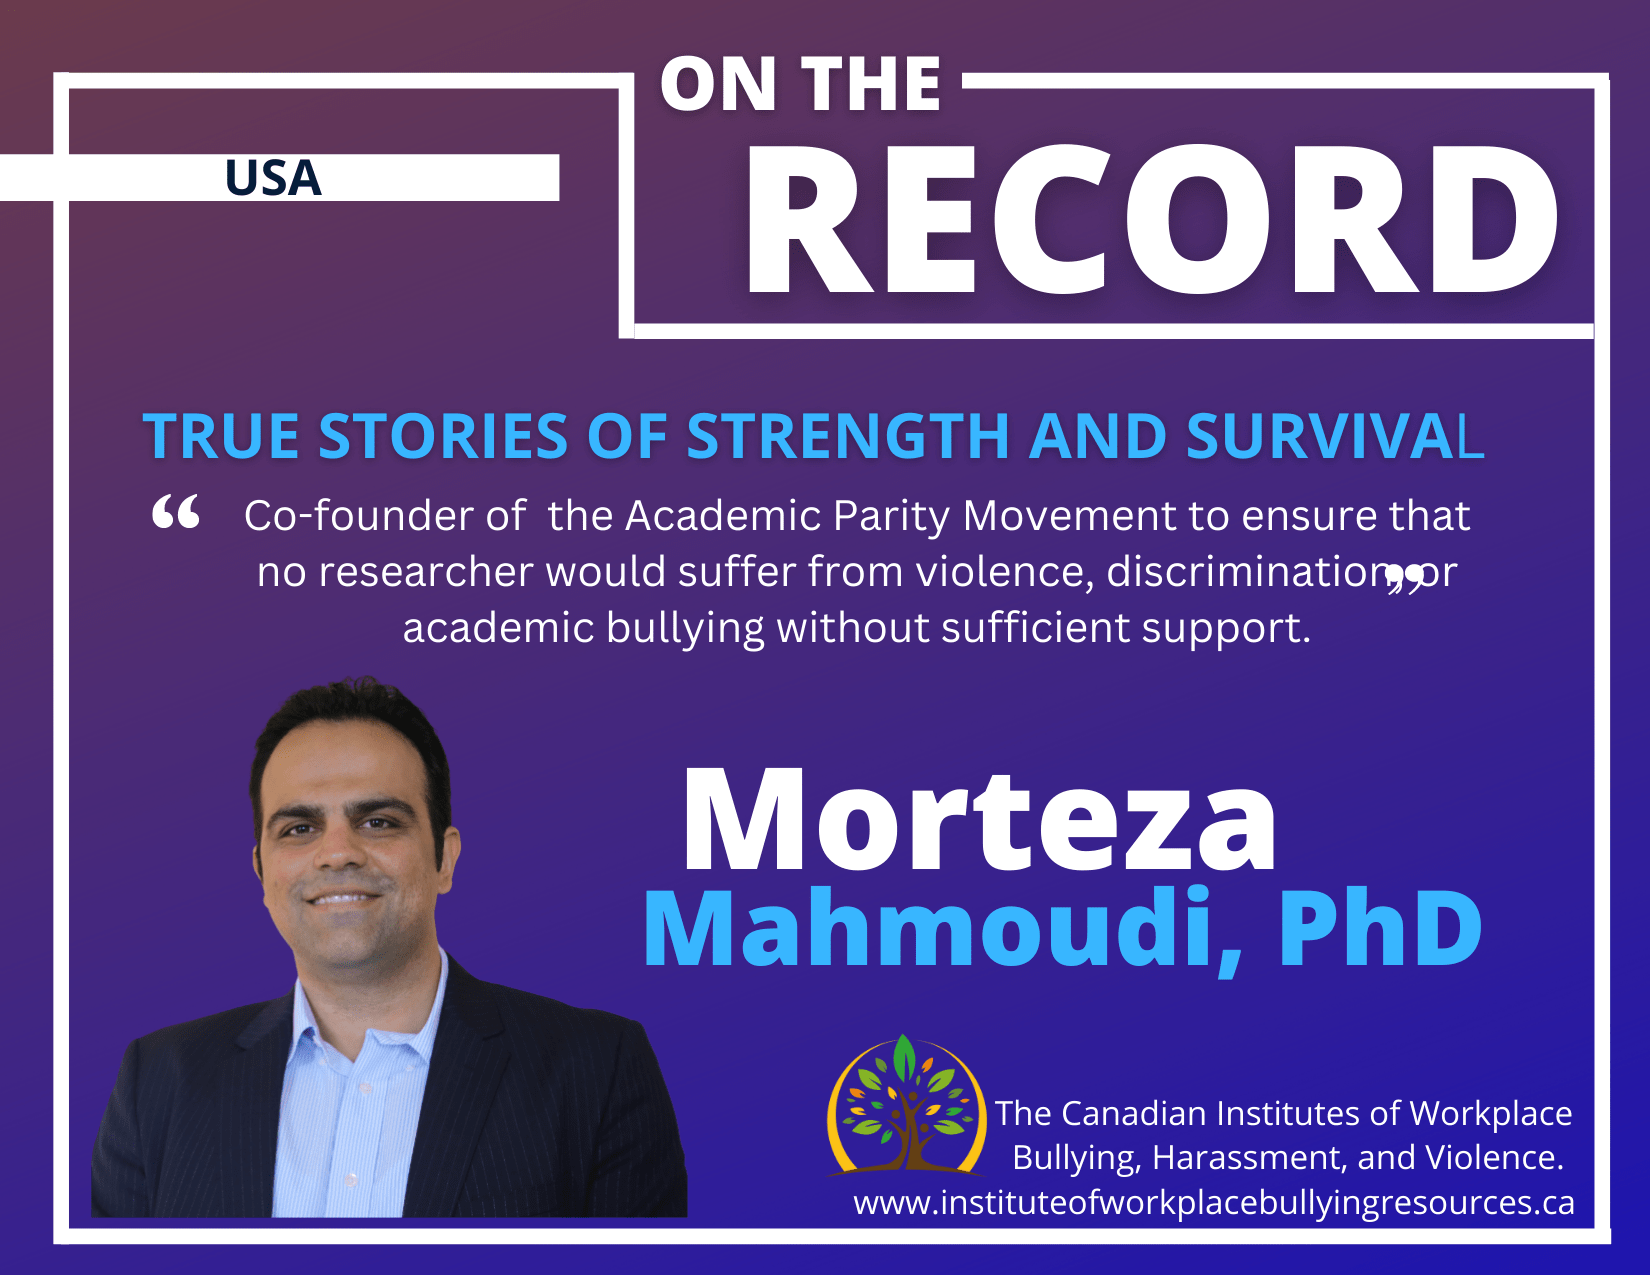 Dr. Morteza Mahmoudi